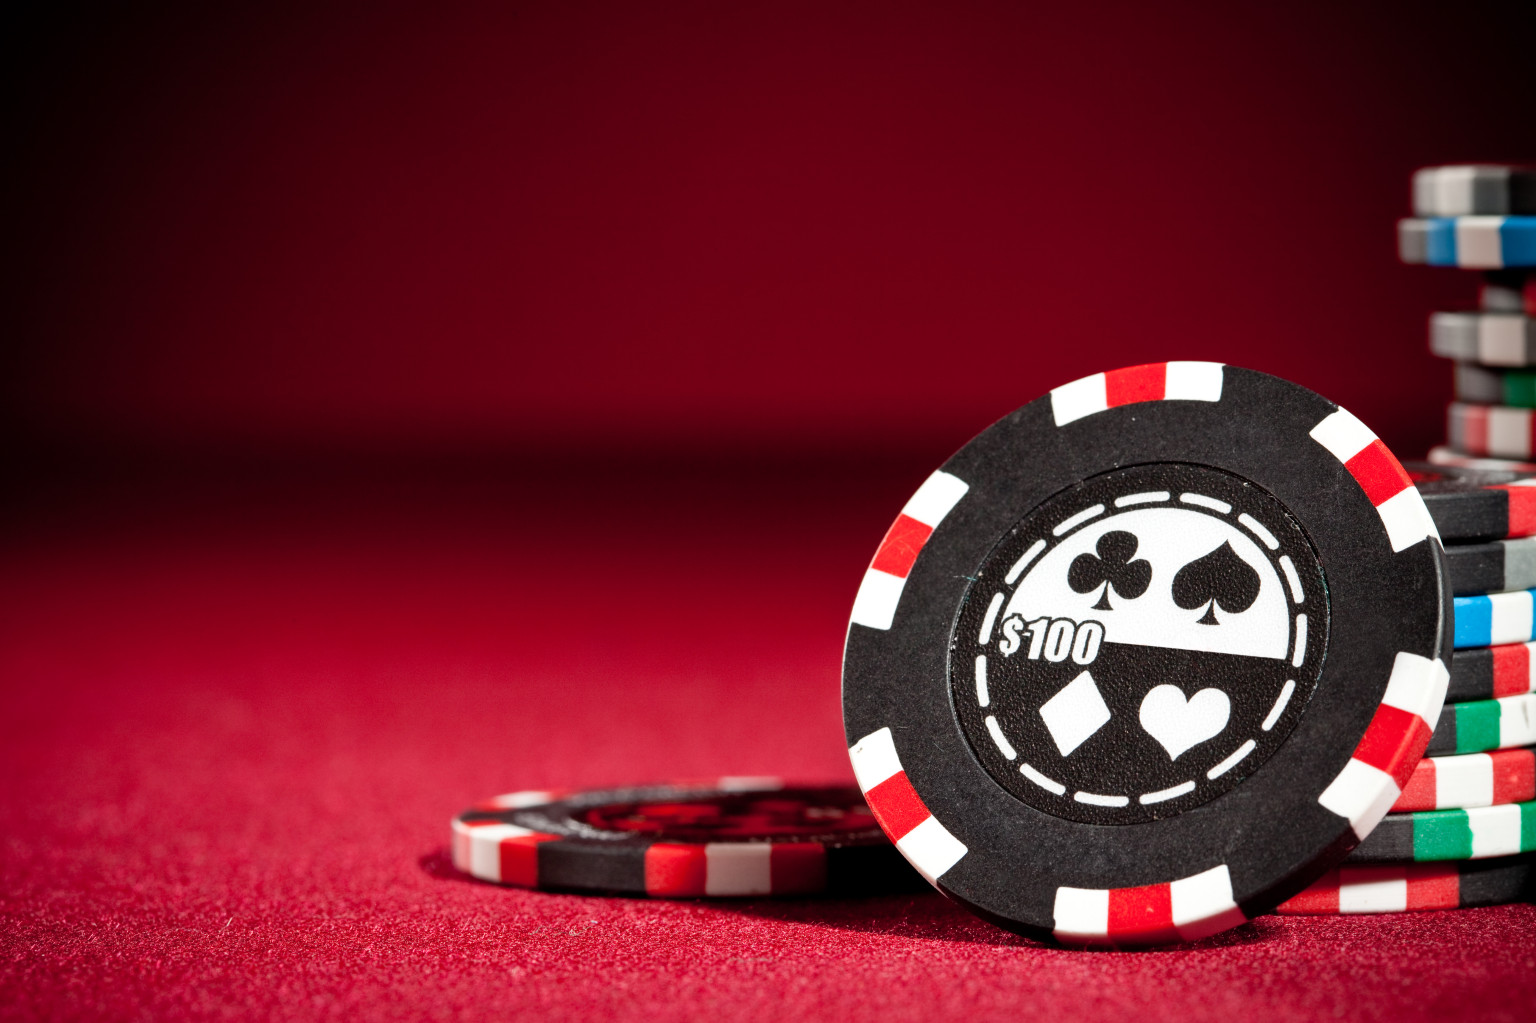 Jeux casino : les bonus et avantages